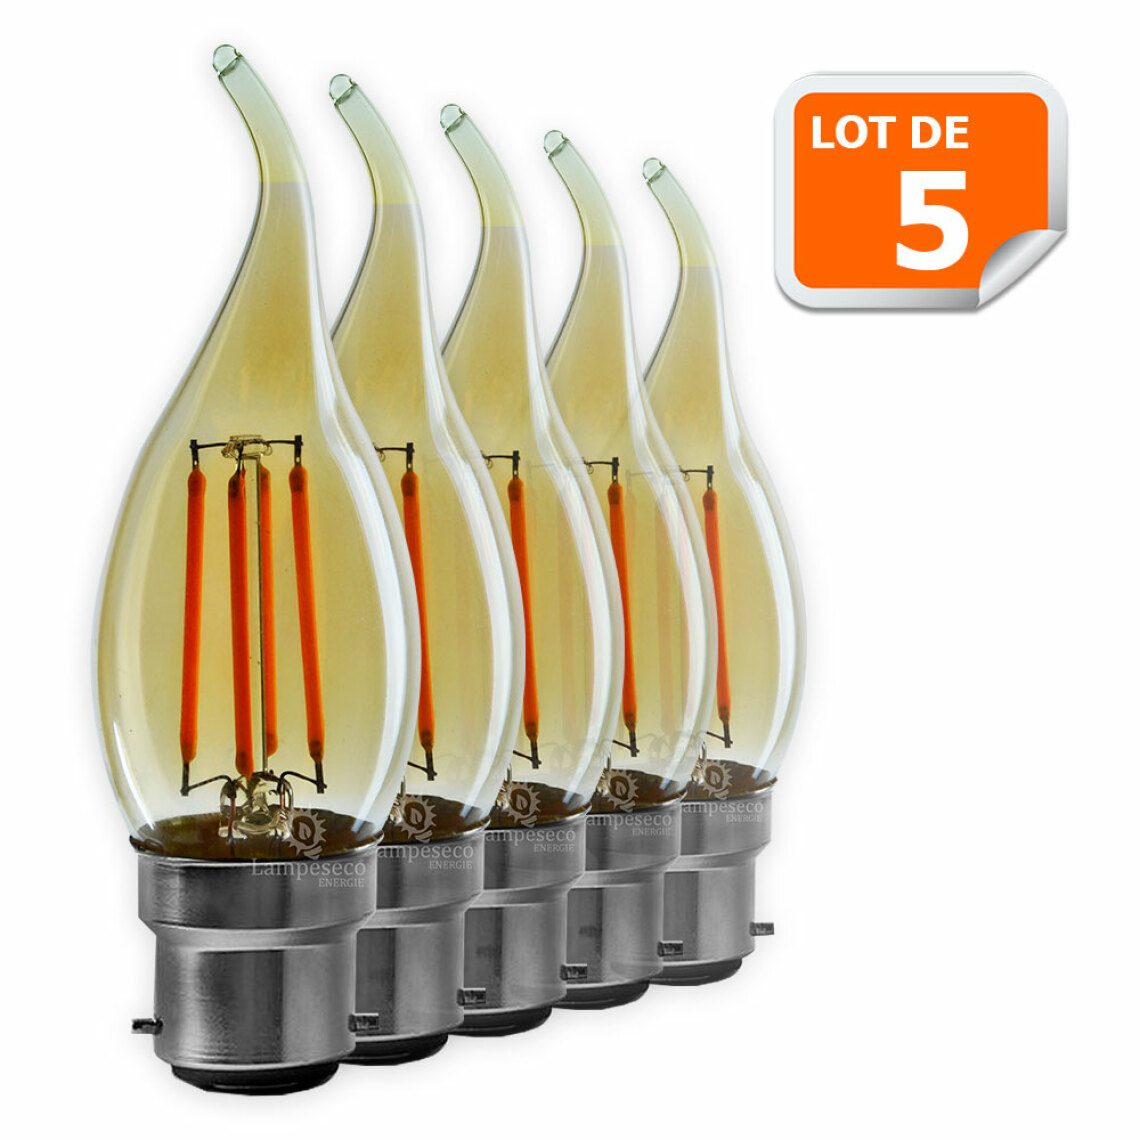 Lampesecoenergie - Lot de 5 Ampoules décorative led à filament Doré 4 watt (éq. 42 Watt) Culot B22 - Ampoules LED